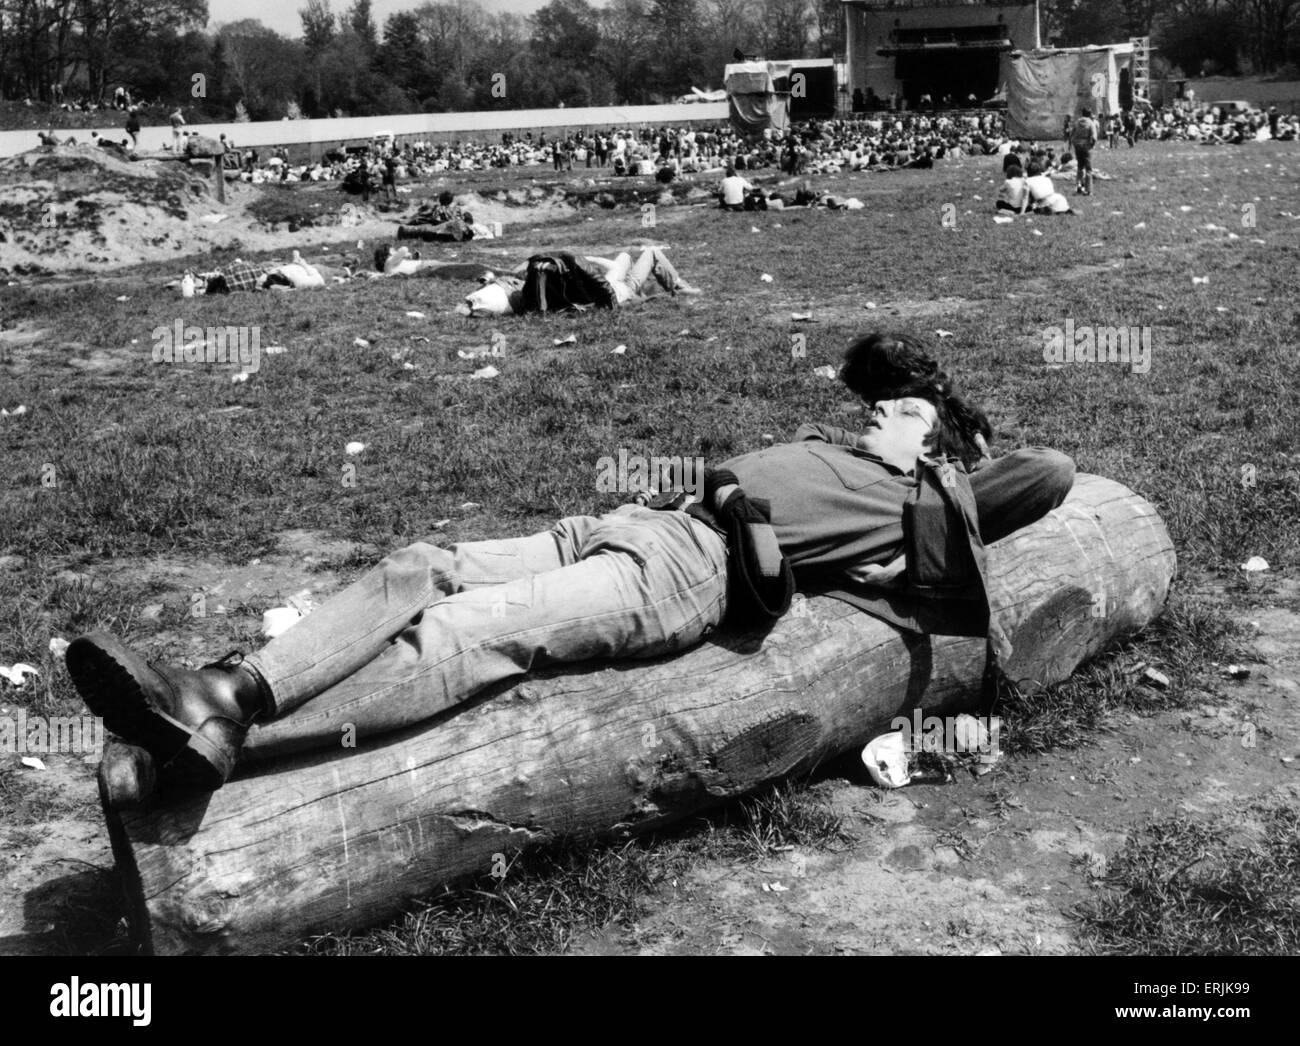 Le Festival de Rock de Loch Lomond, Cameron Wildlife Park, Balloch, Dumbartonshire, Ecosse, 27 mai 1979. Banque D'Images